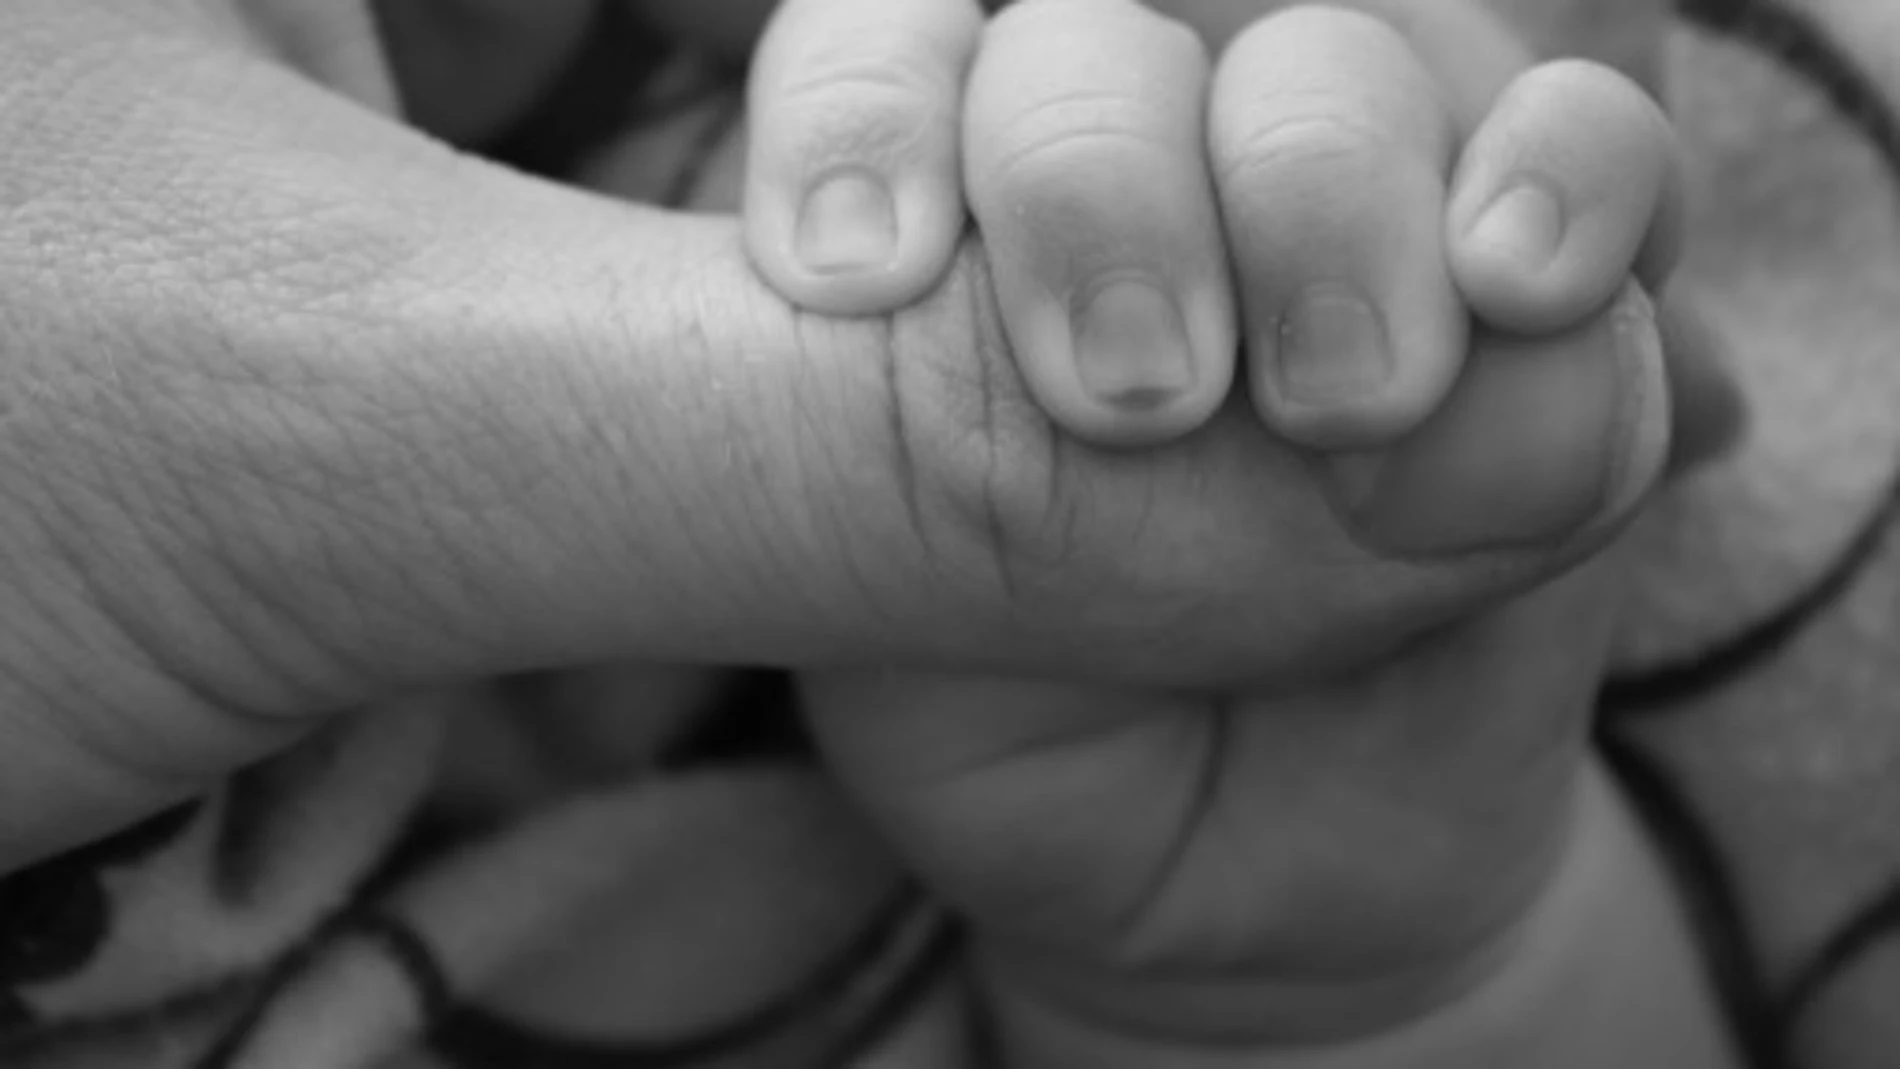 Donar óvulos tras ser madre: un nuevo estudio despeja una duda recurrente